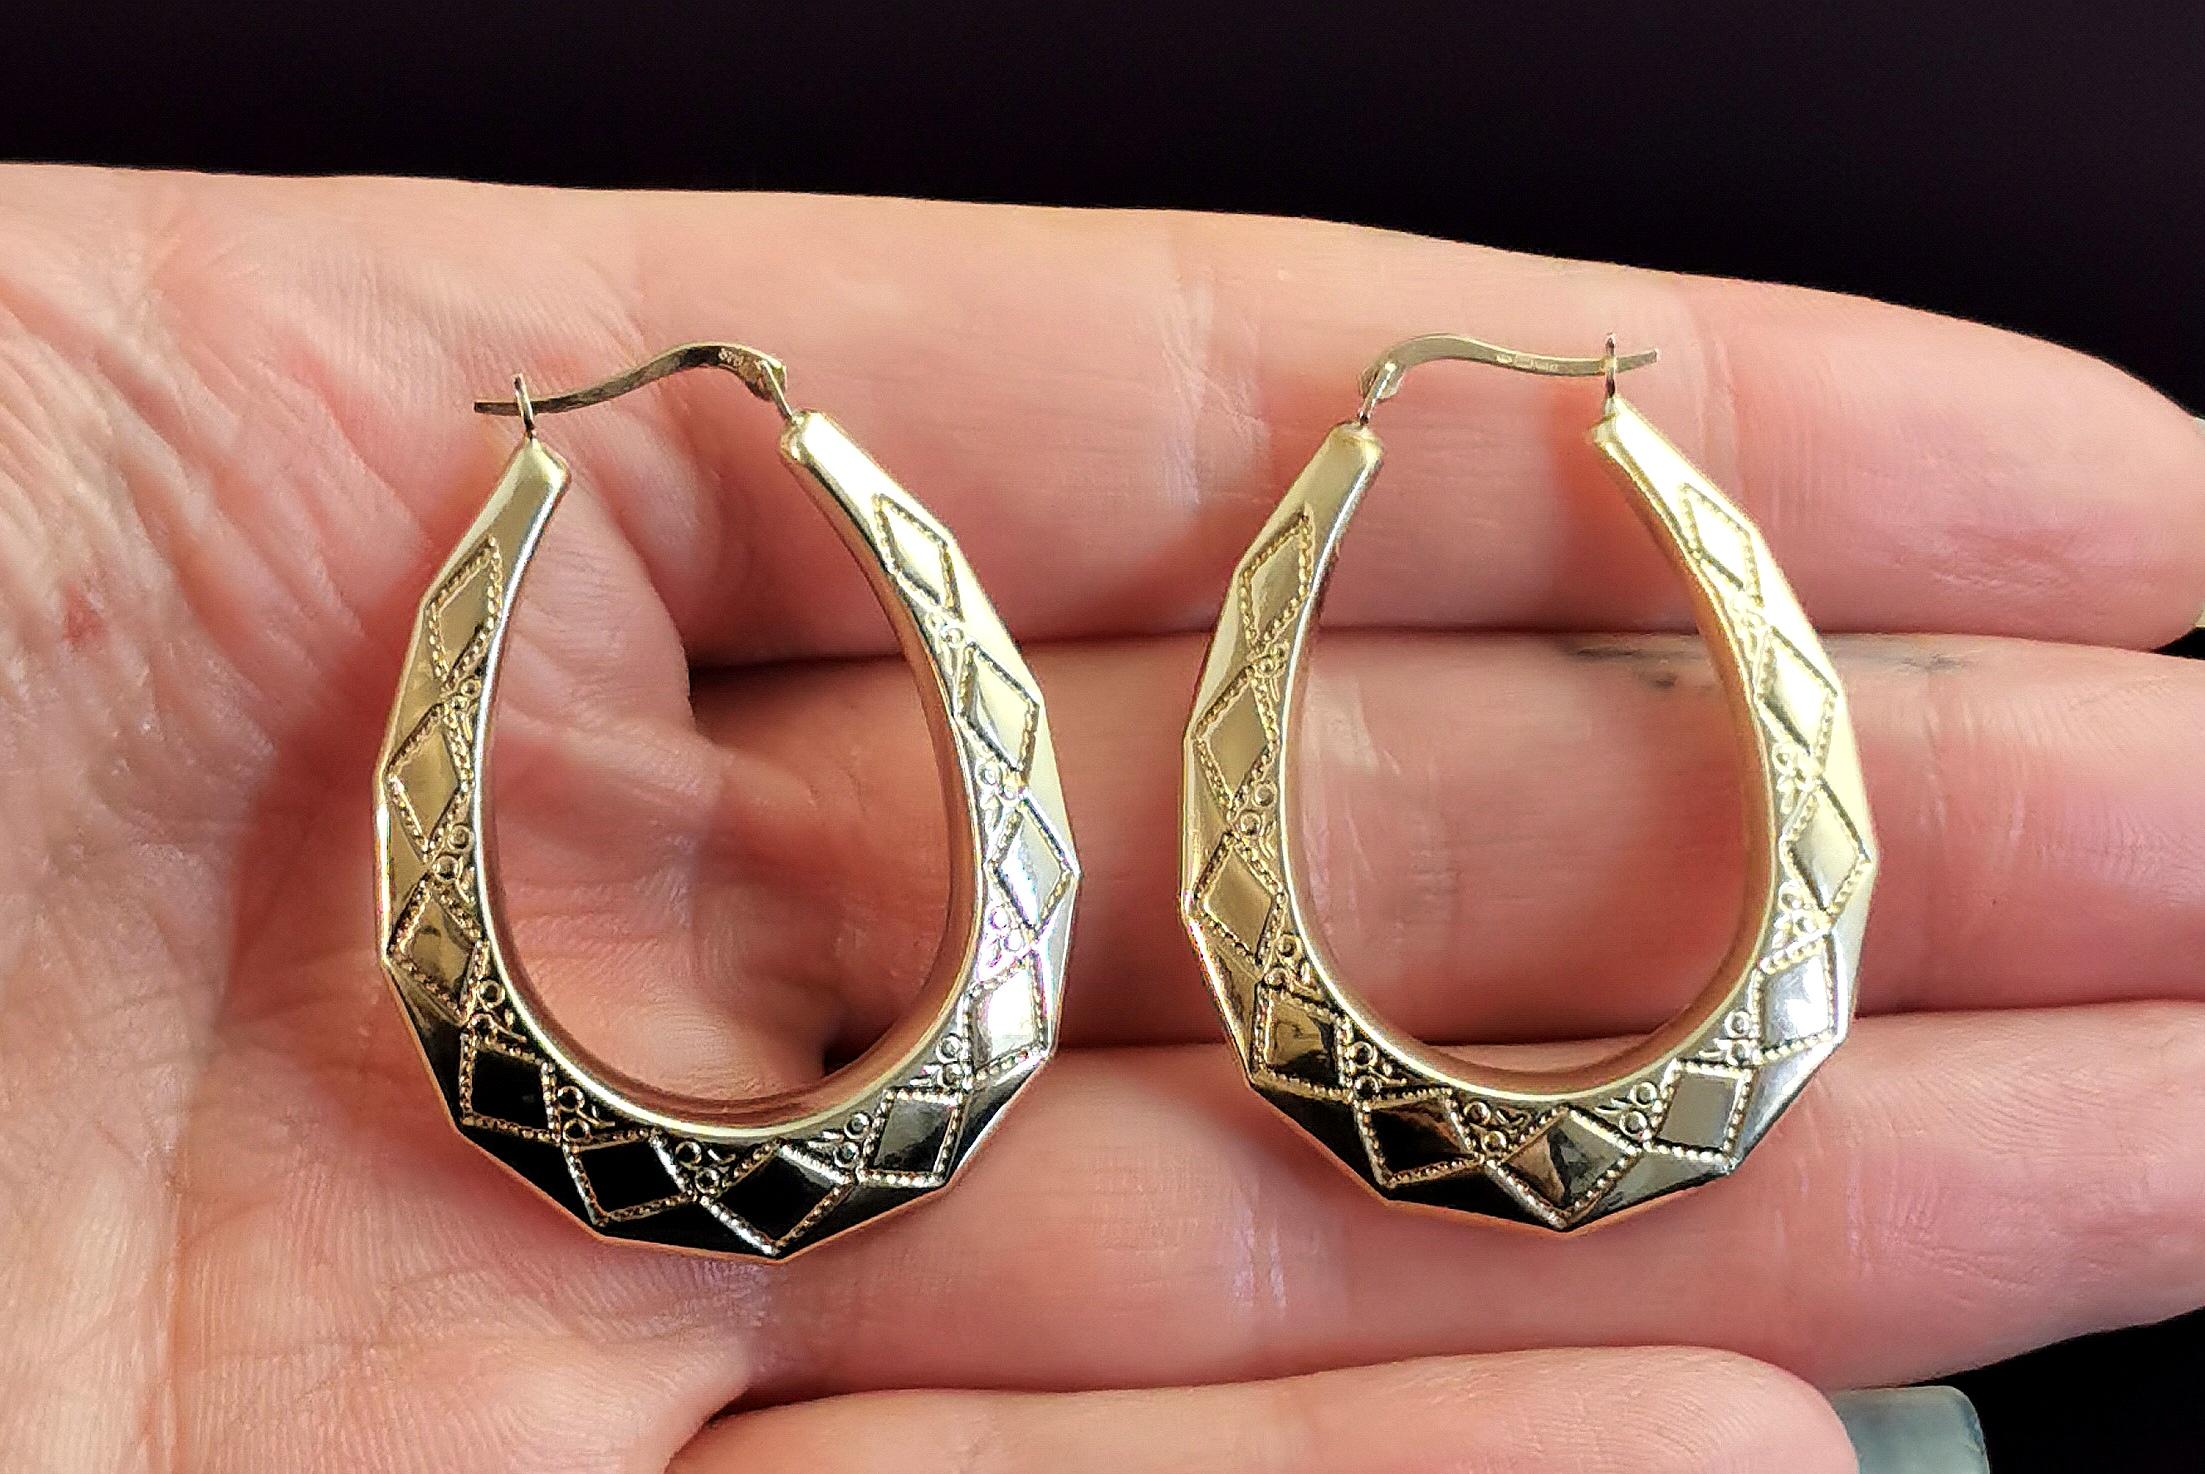 90's gold hoop earrings for men